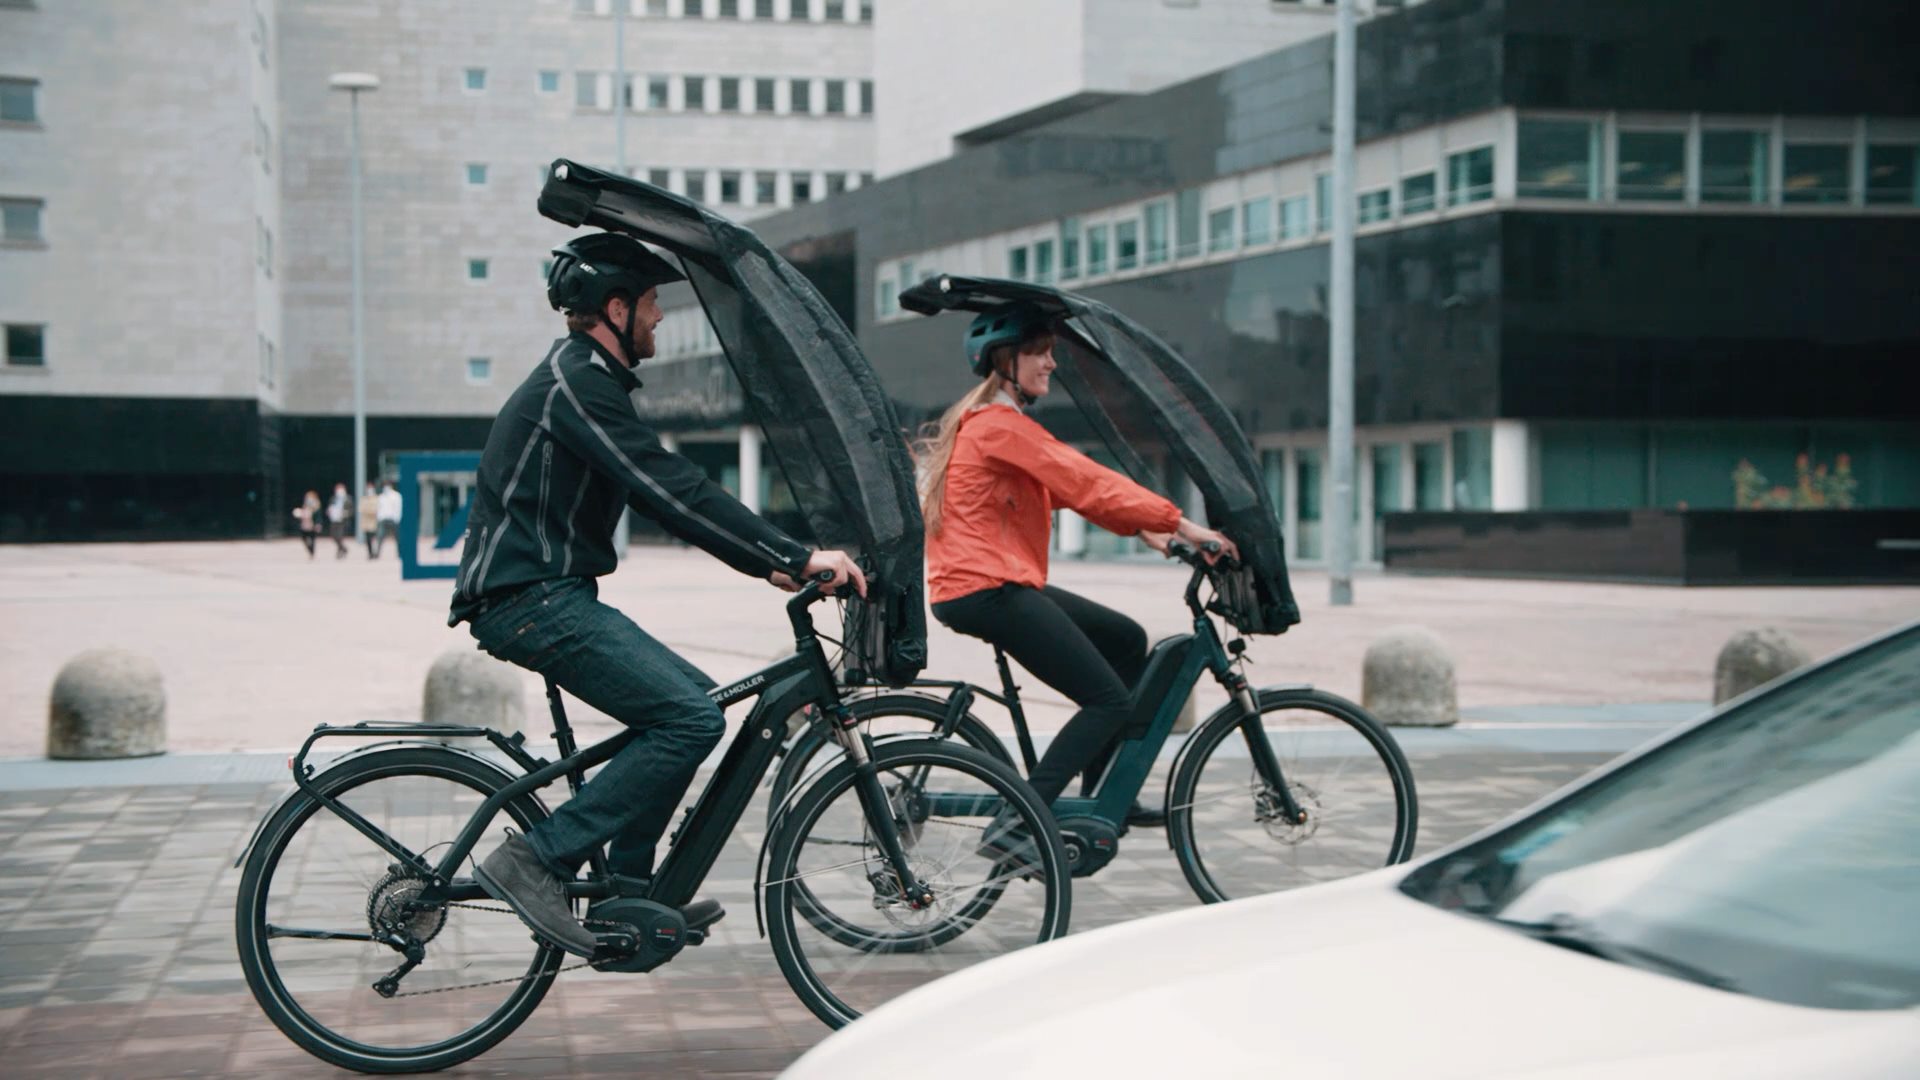 Fahrrad Regen Abdeckung Atmungsaktive Langlebig Fahrrad Regen Schutz Schild  Kind Sicherheit Sitze Bike Accessoriests Regen Schutz Schild